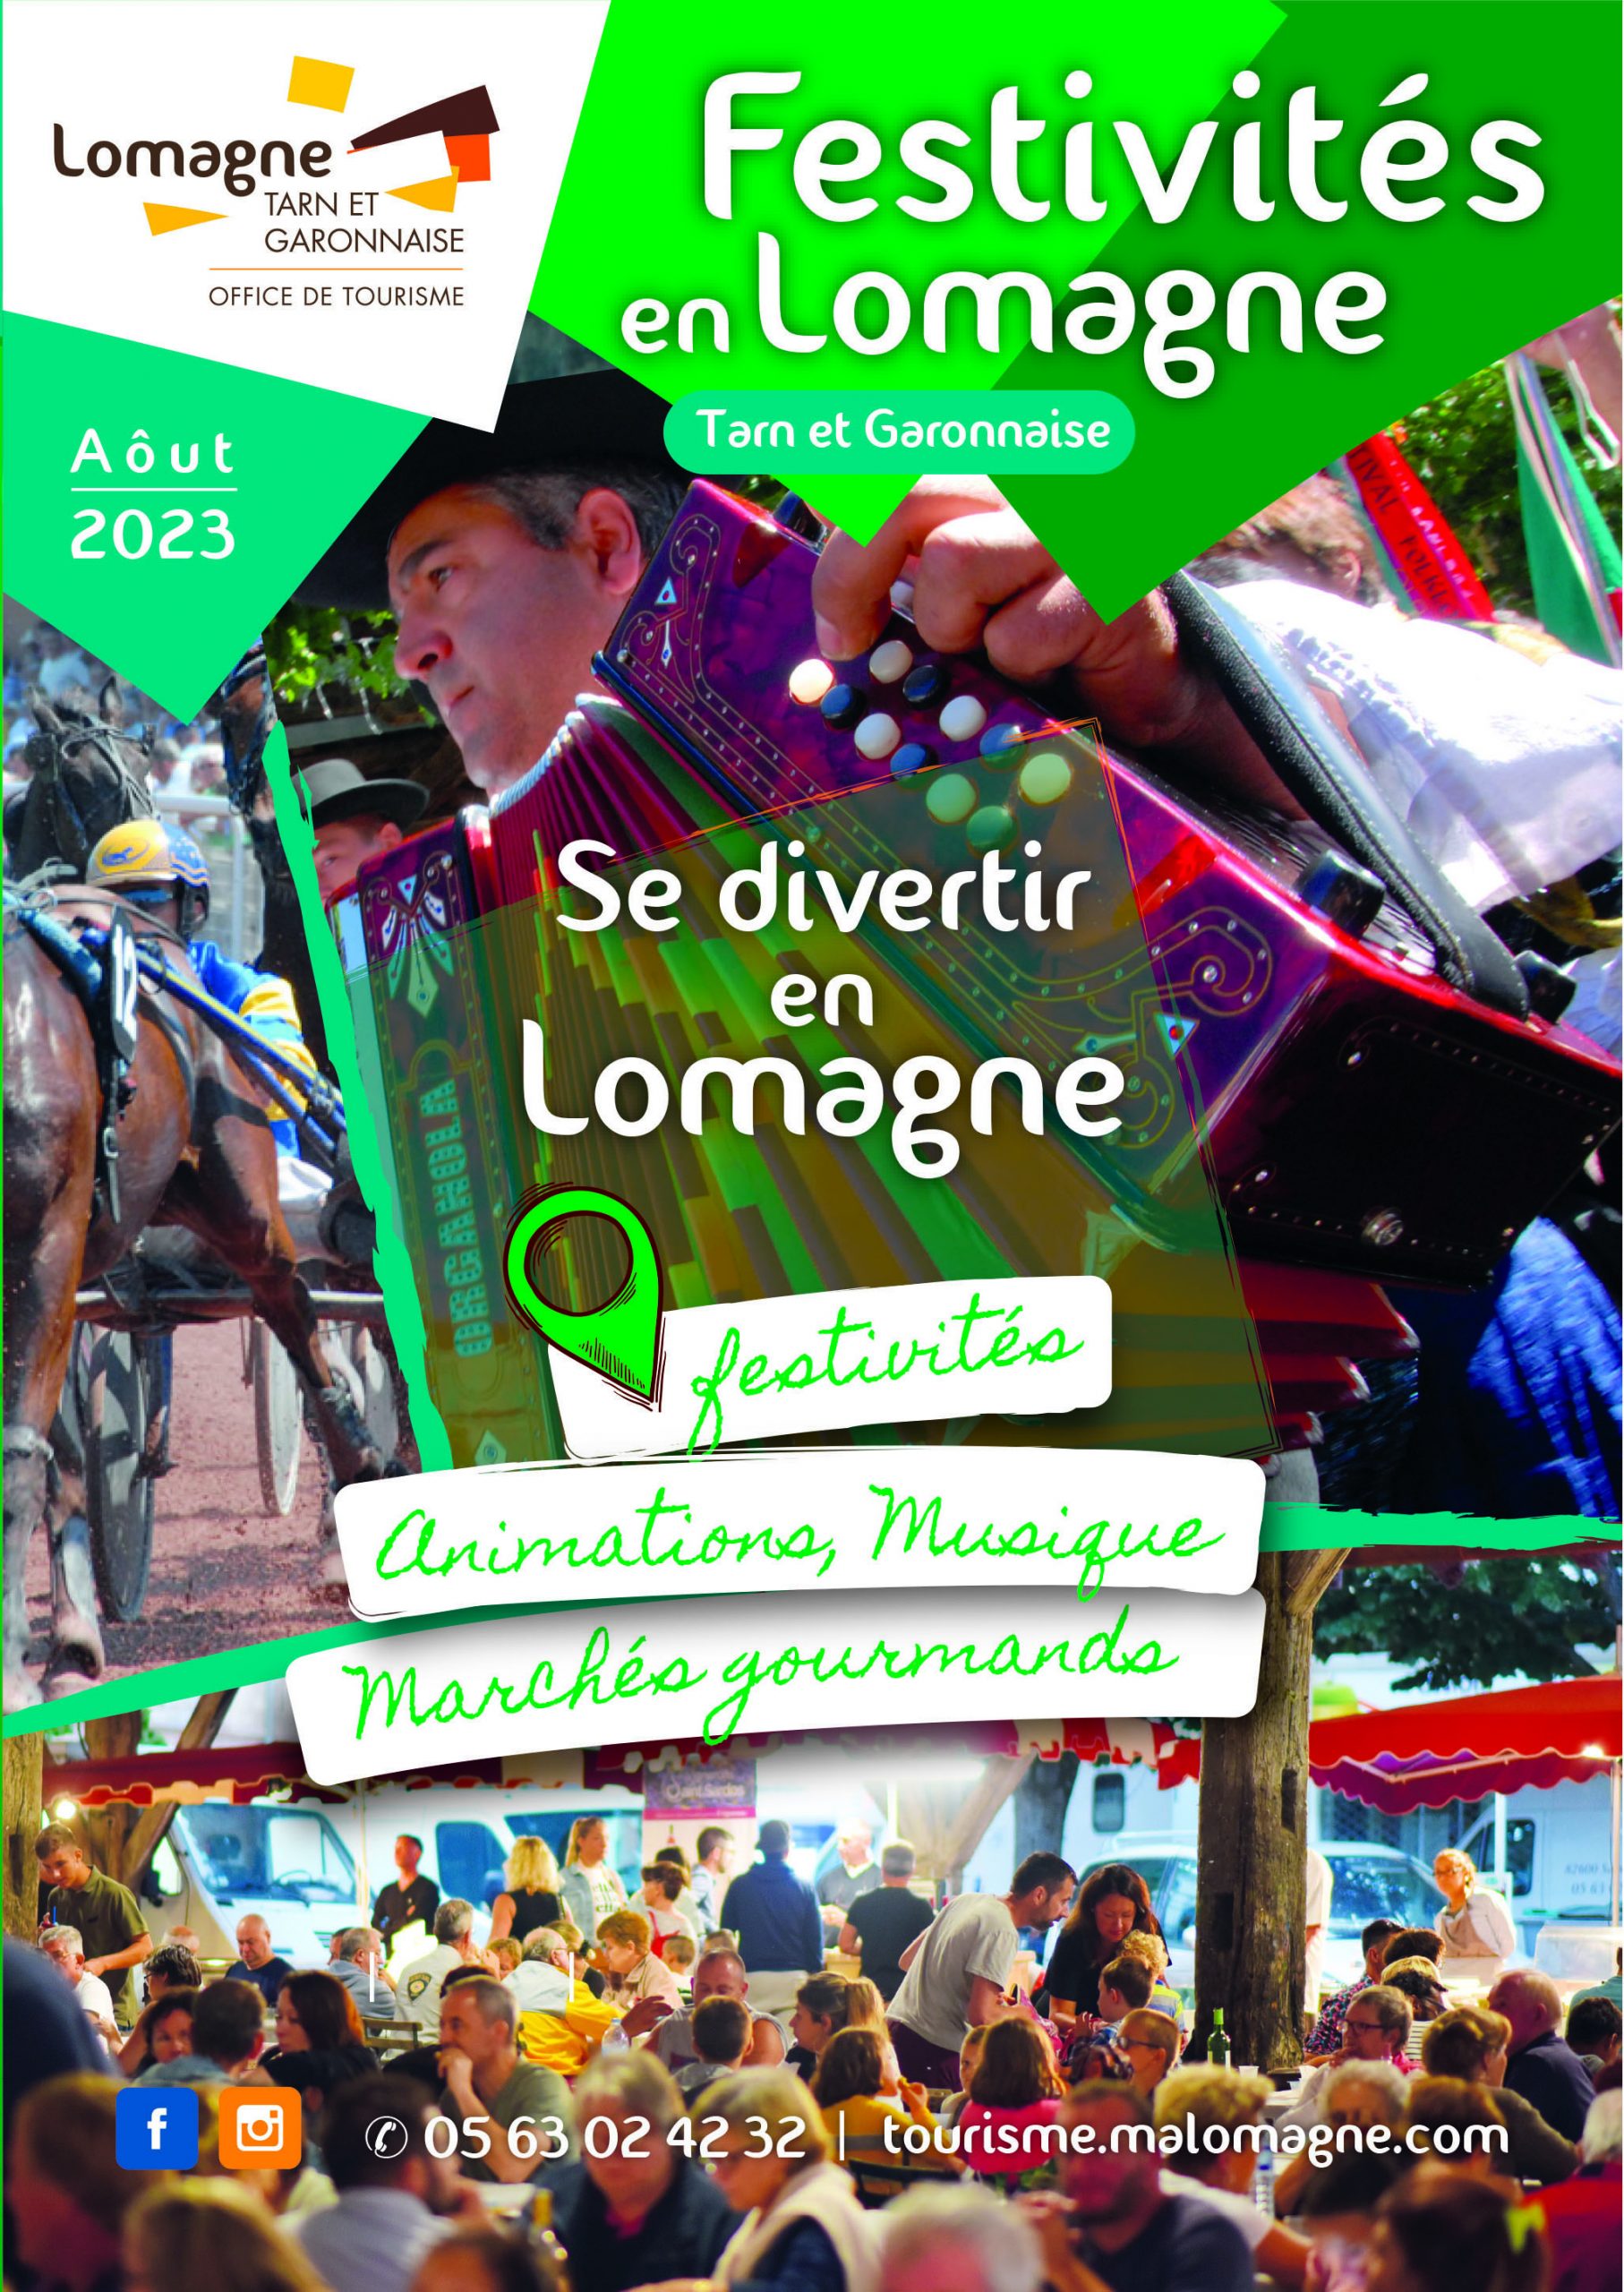 Festivités en Lomagne aout 2023